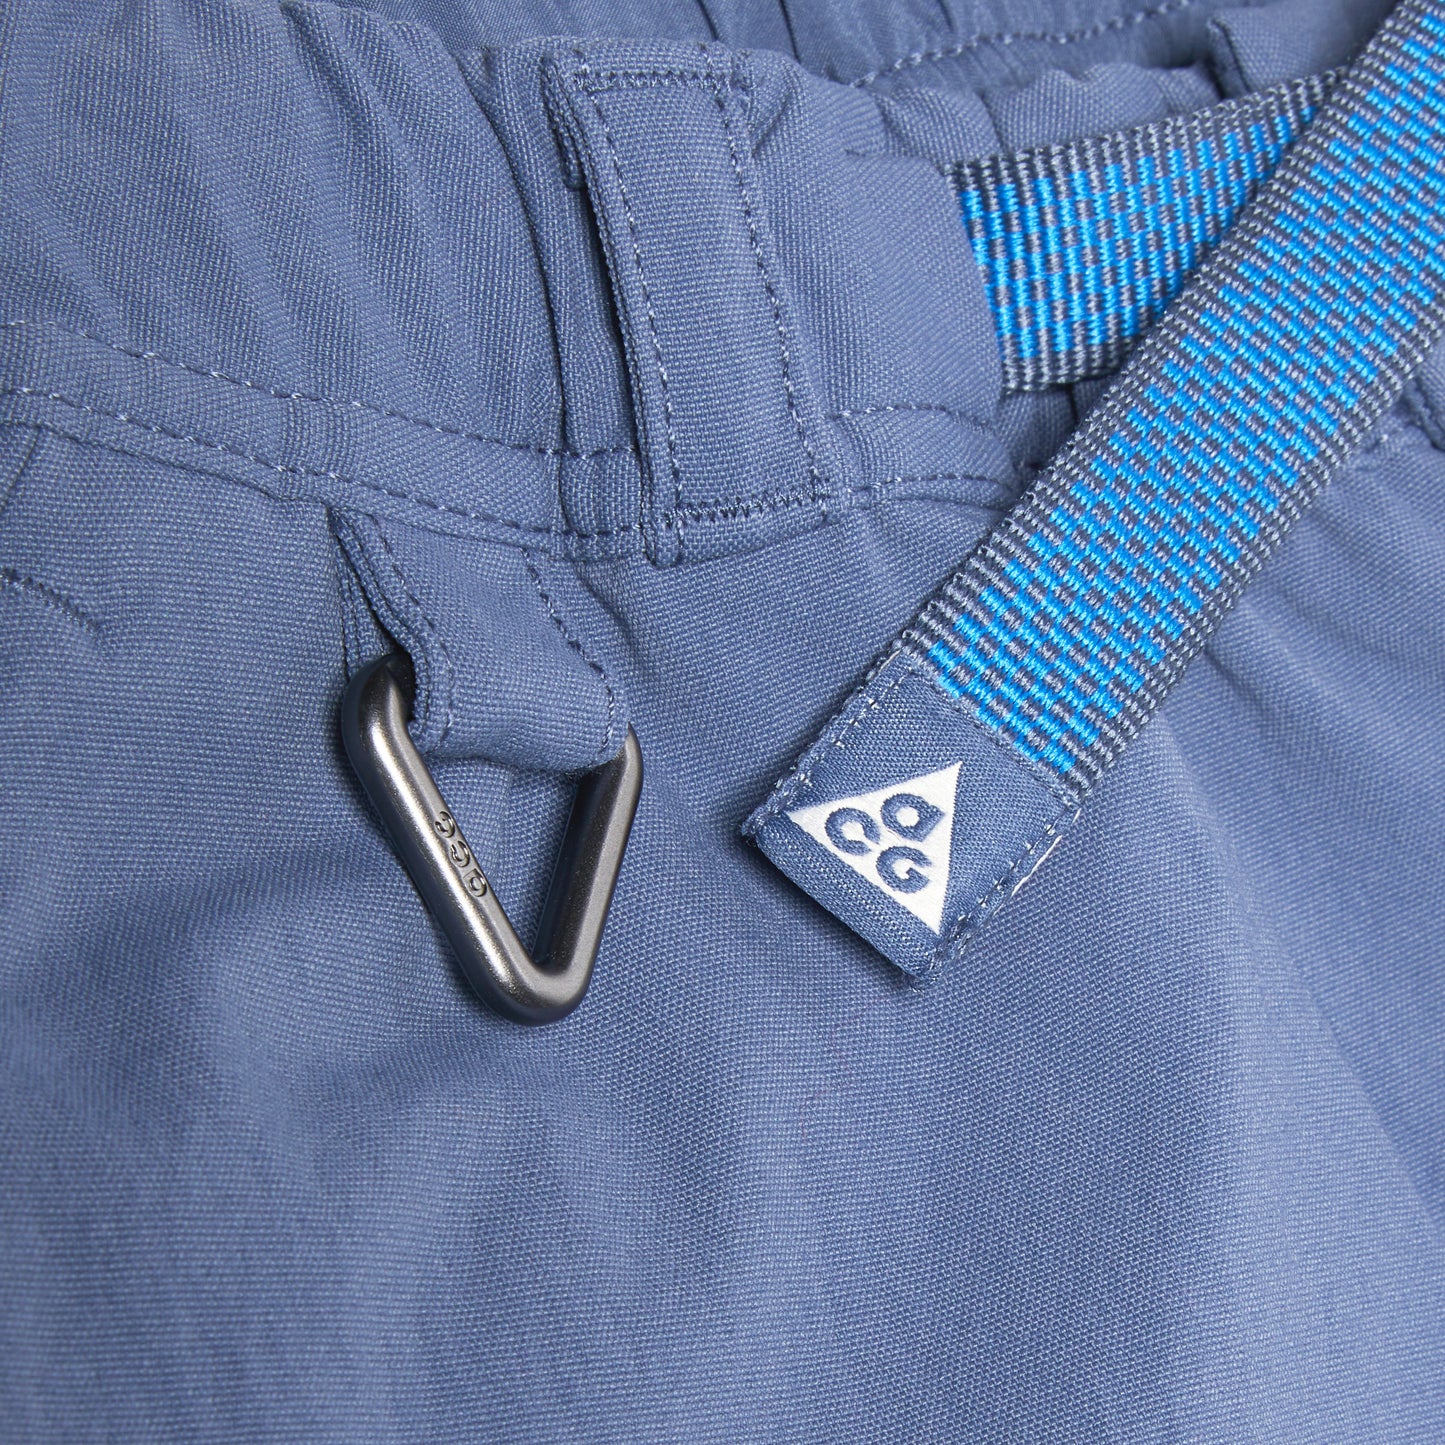 Nike ACG "Smith Summit" Cargo Pant (Diffused Blue/Light Photo Blue/Summit White)